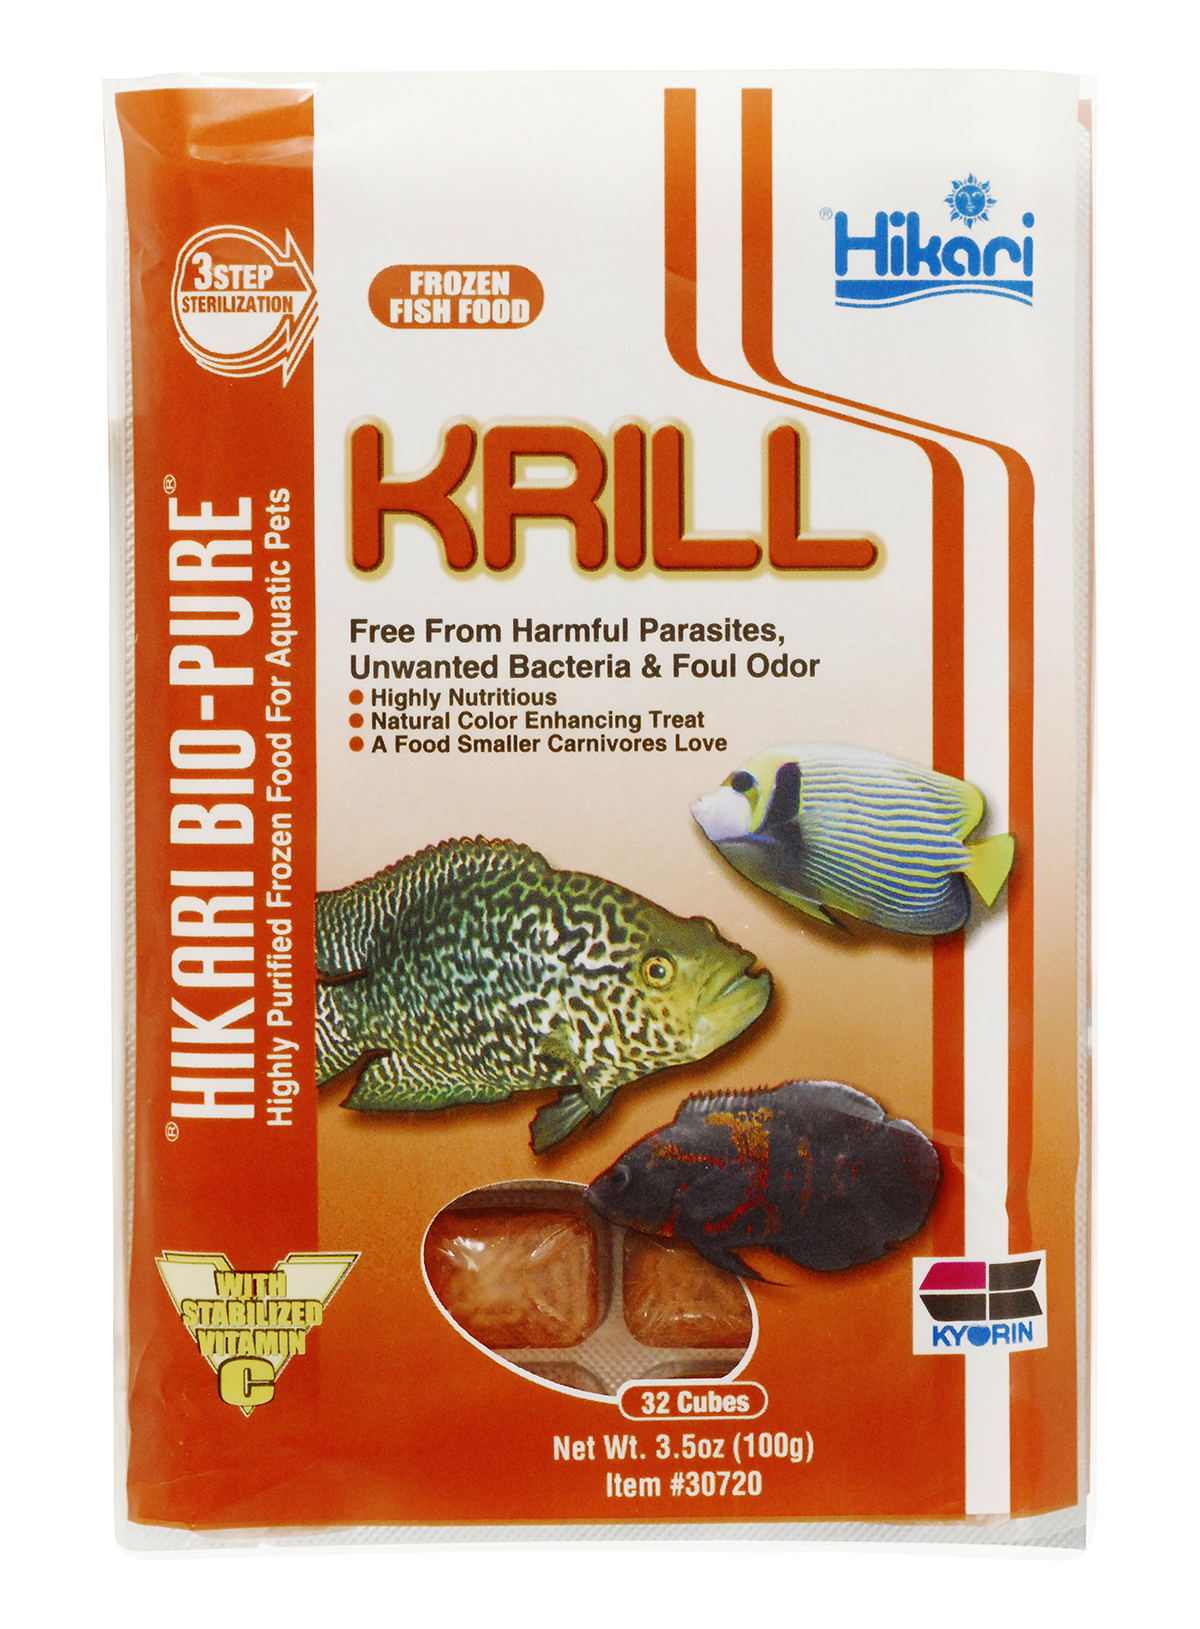 Frozen Krill - Hikari Sales USA